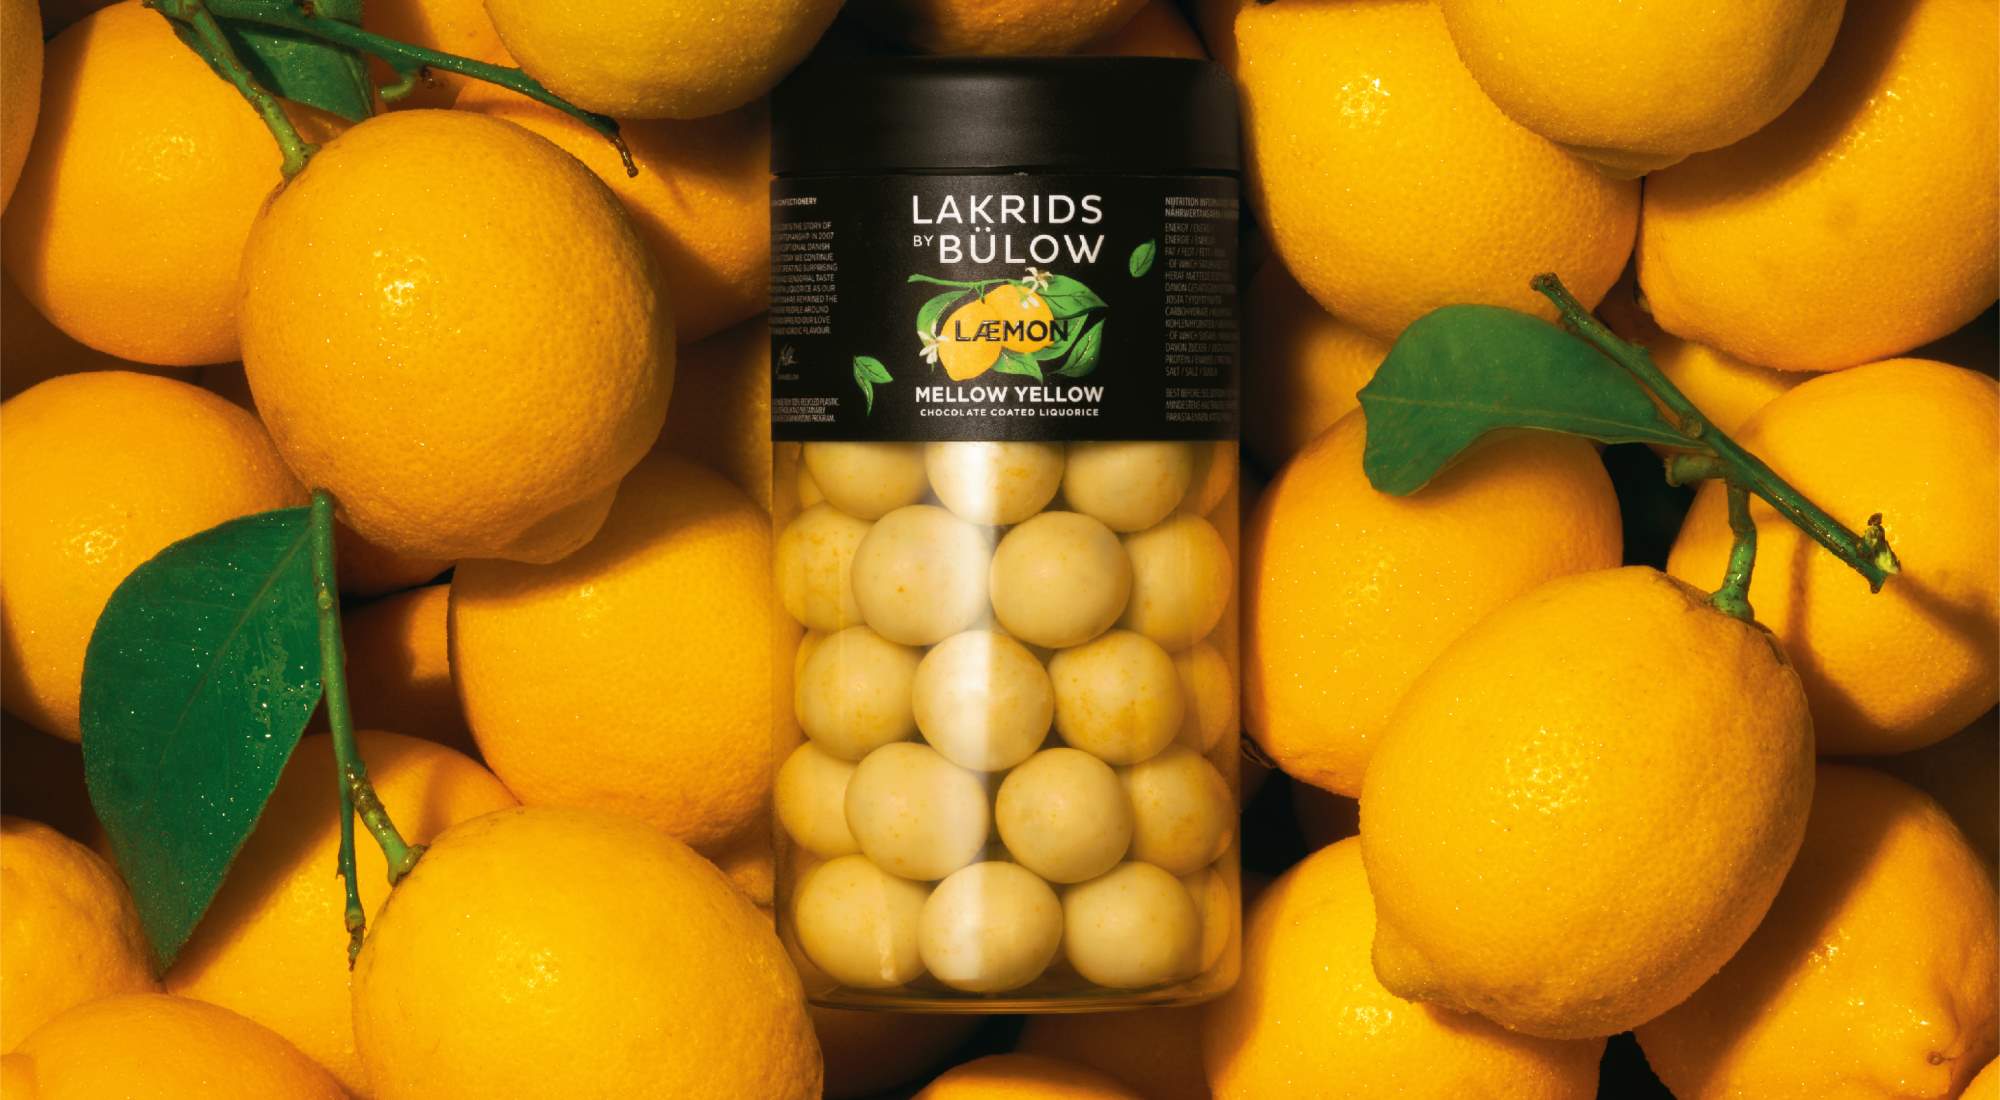 Lakrids by bulow Lemon